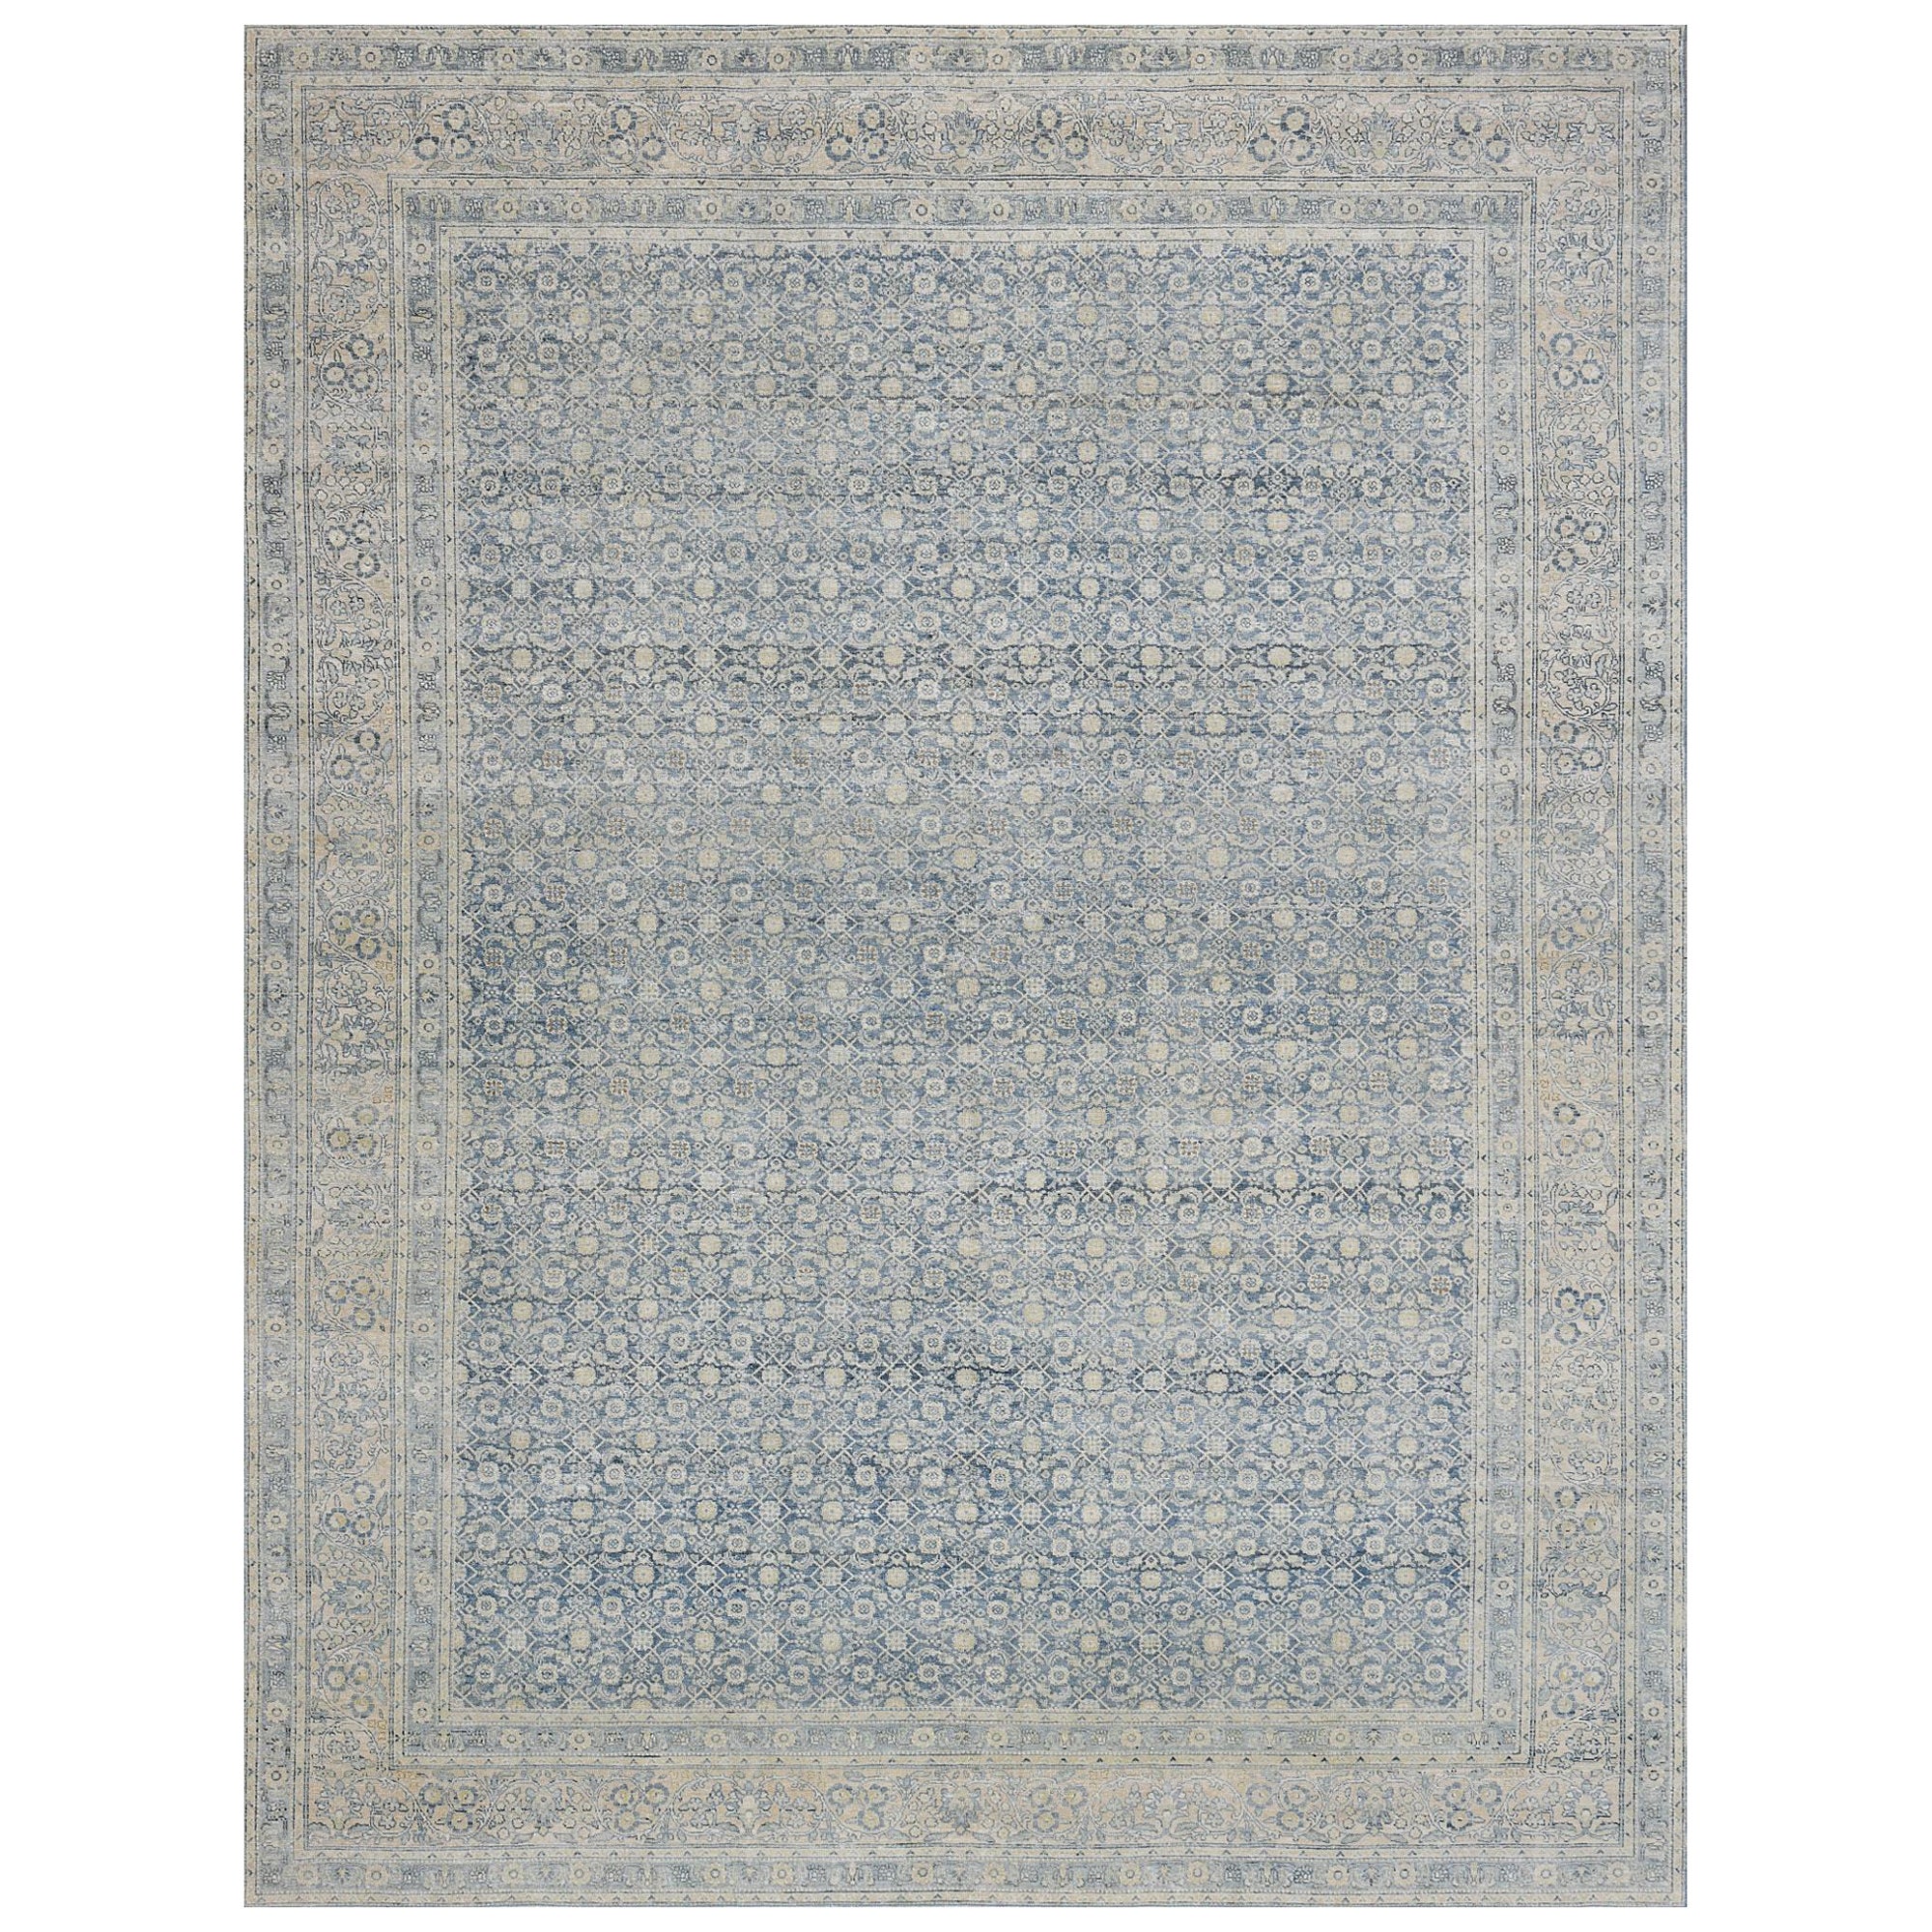 CIRCA - Tapis persan Tabriz en laine bleue tissé à la main vers 1910